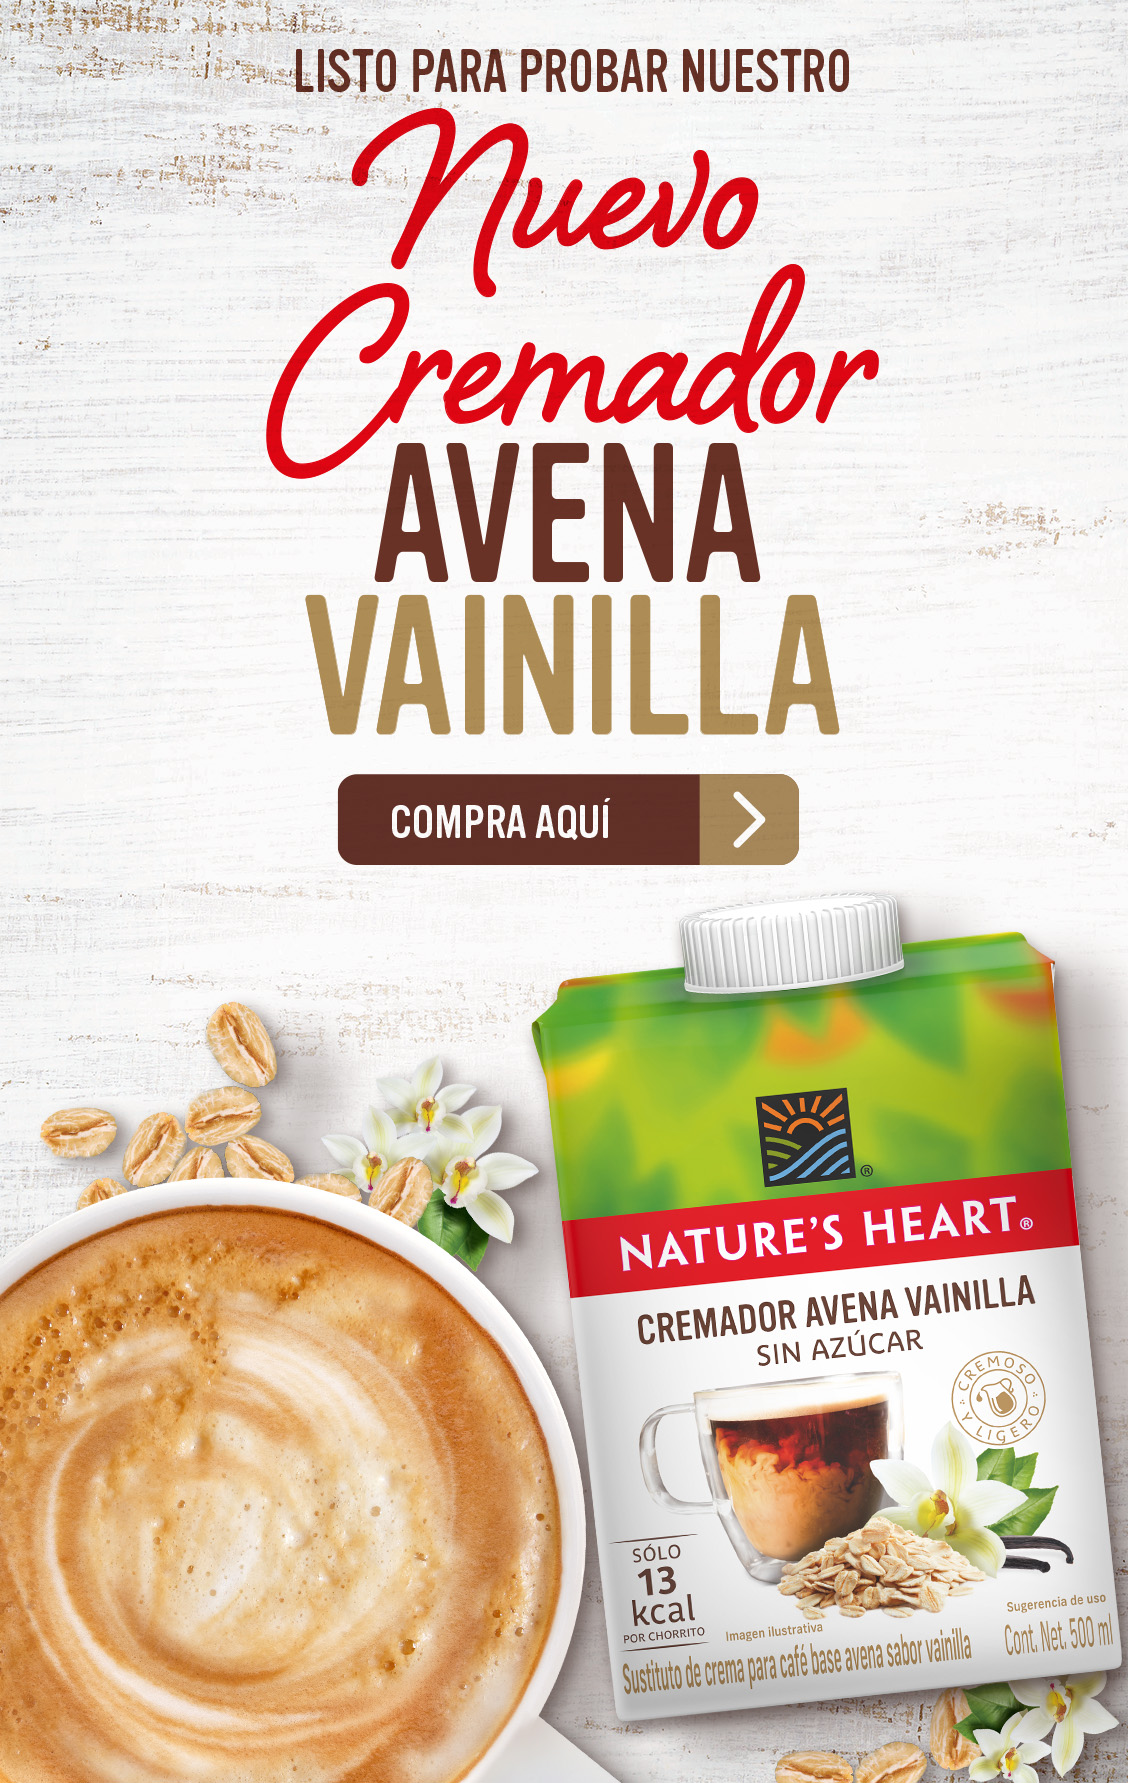 Nuevo Cremador Avena Vainilla Nature's Heart Banner Mobile